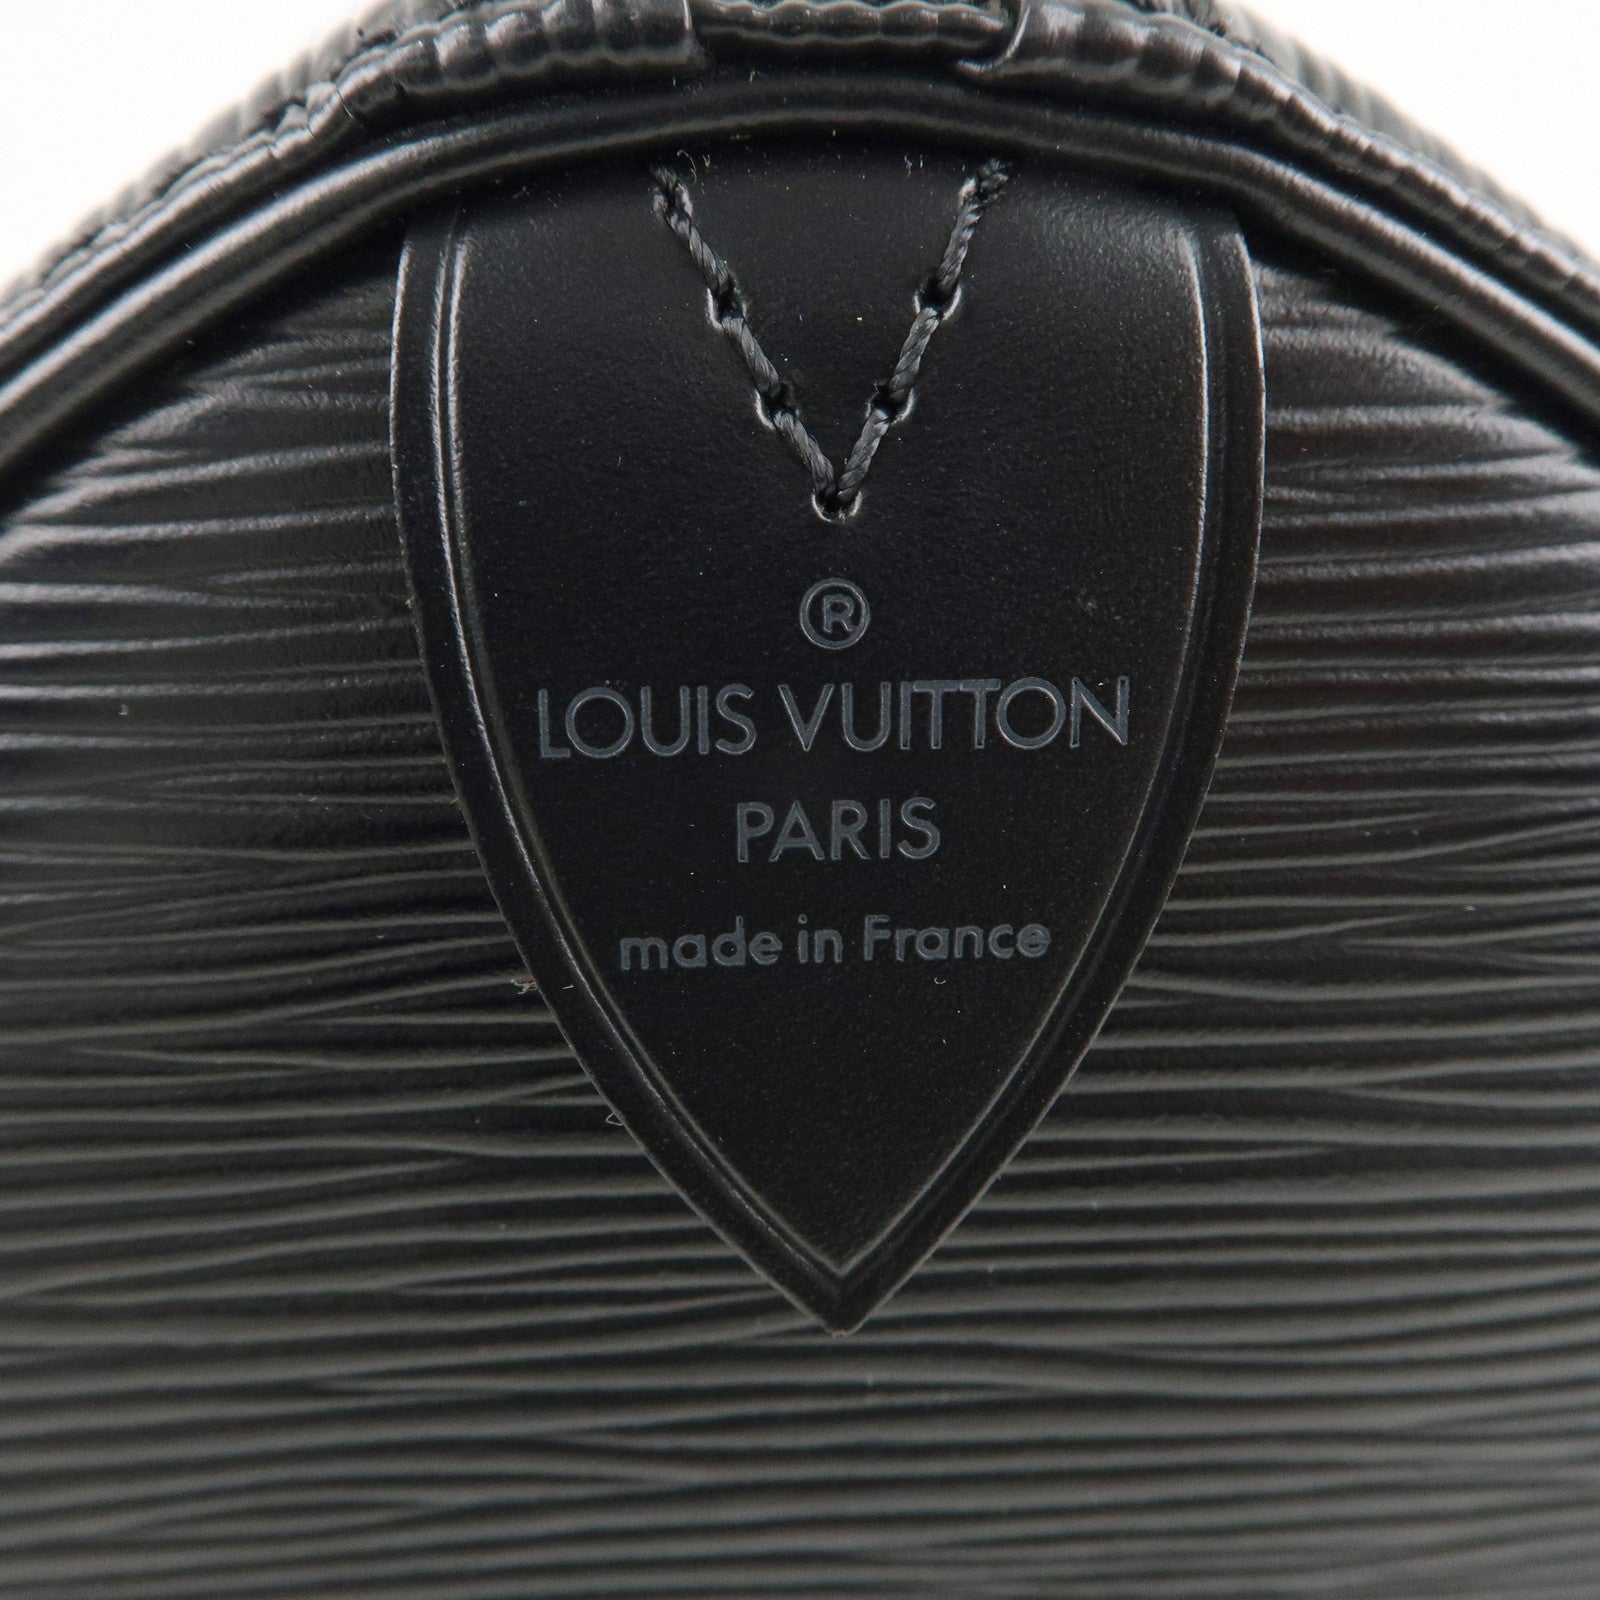 Louis Vuitton Louis Vuitton Speedy 30 Black Epi Leather Silver